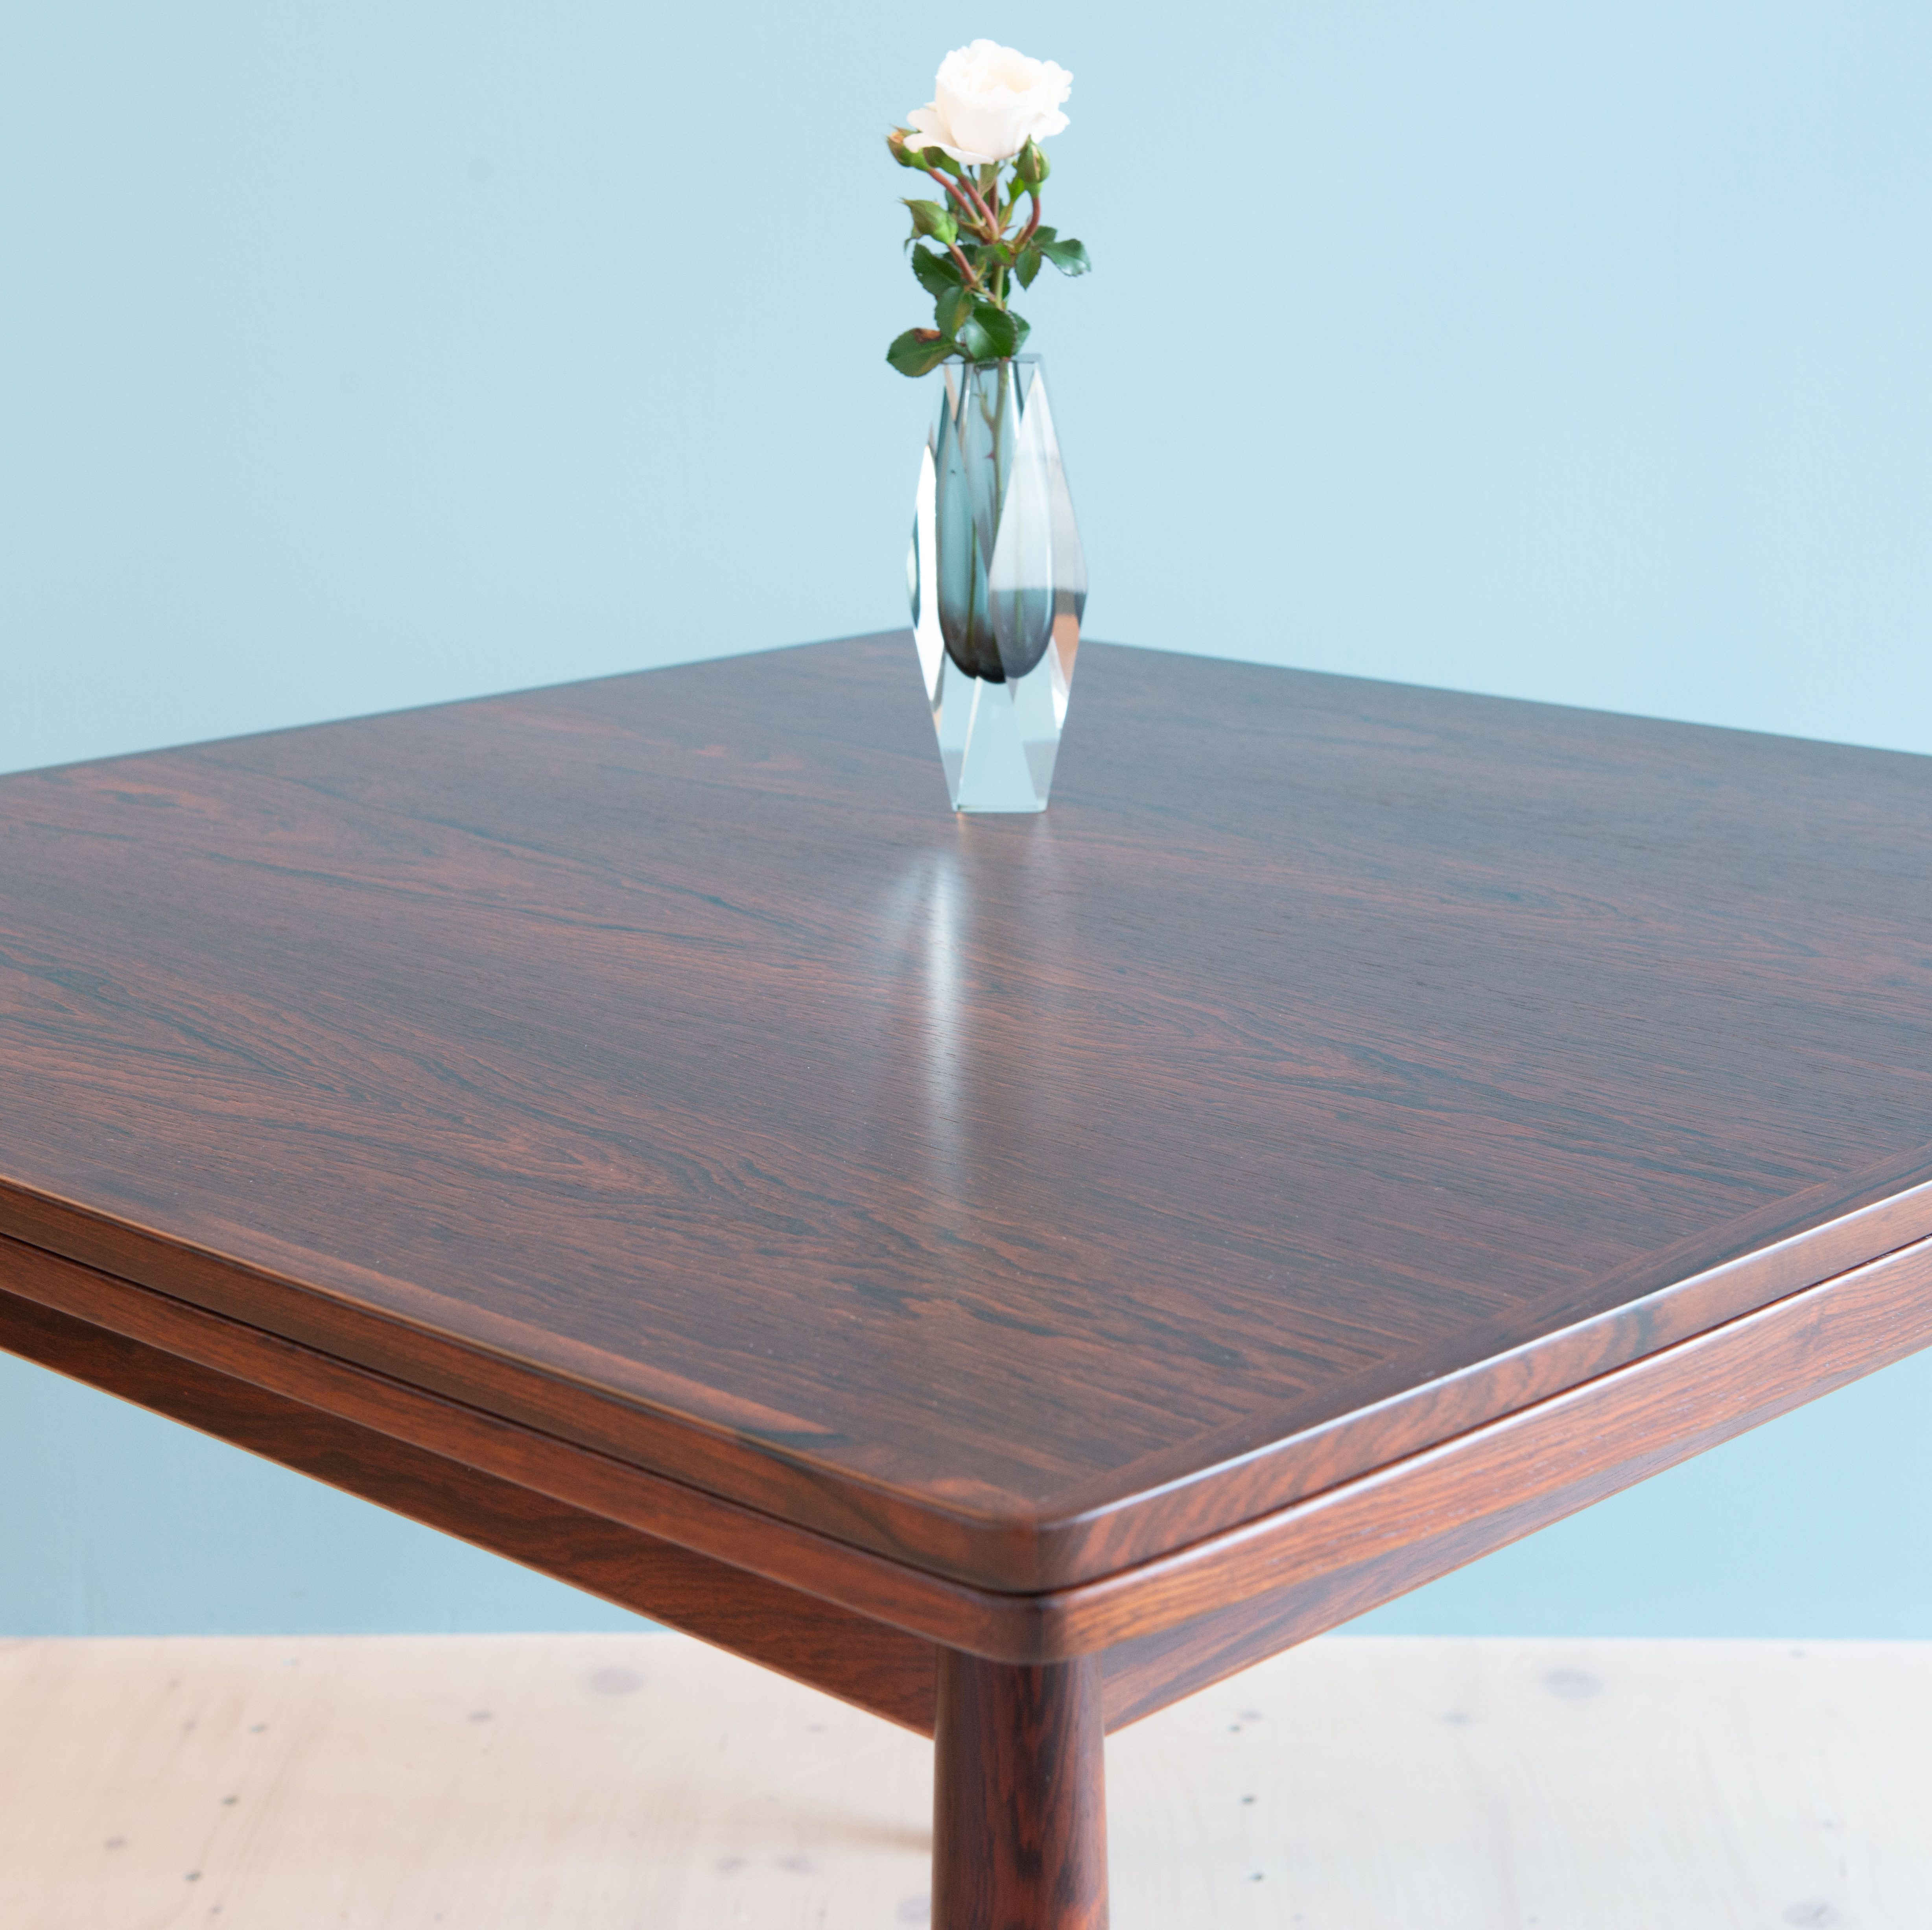 Rosewood Table by Arne Vodder for Sibast Furniture, Denmark 1960s. Available at heyday möbel, Grubenstrasse 19, 8045 Zürich, Switzerland. Mid-Century Modern.